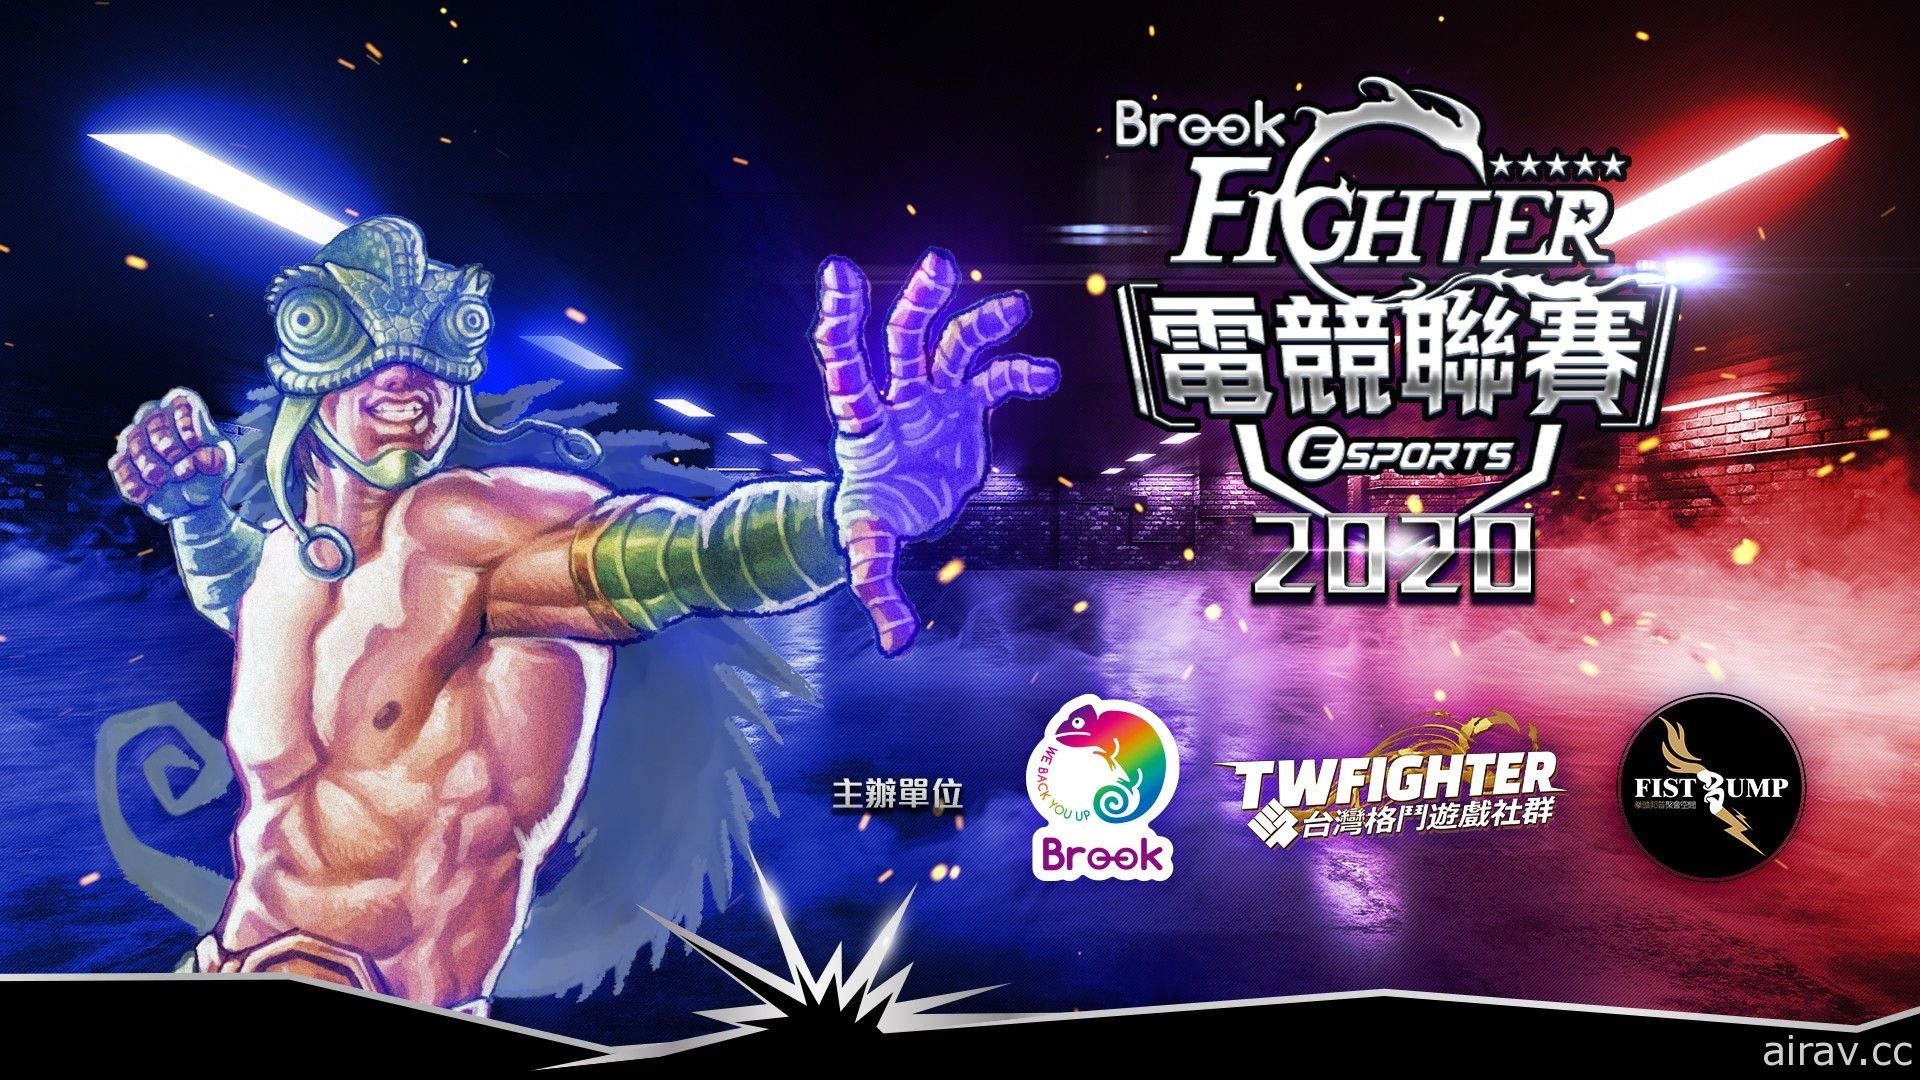 台灣電競聯賽 Brook Fighter 2020 將首度同時舉辦《快打 5》《任天堂大亂鬥》兩大項目